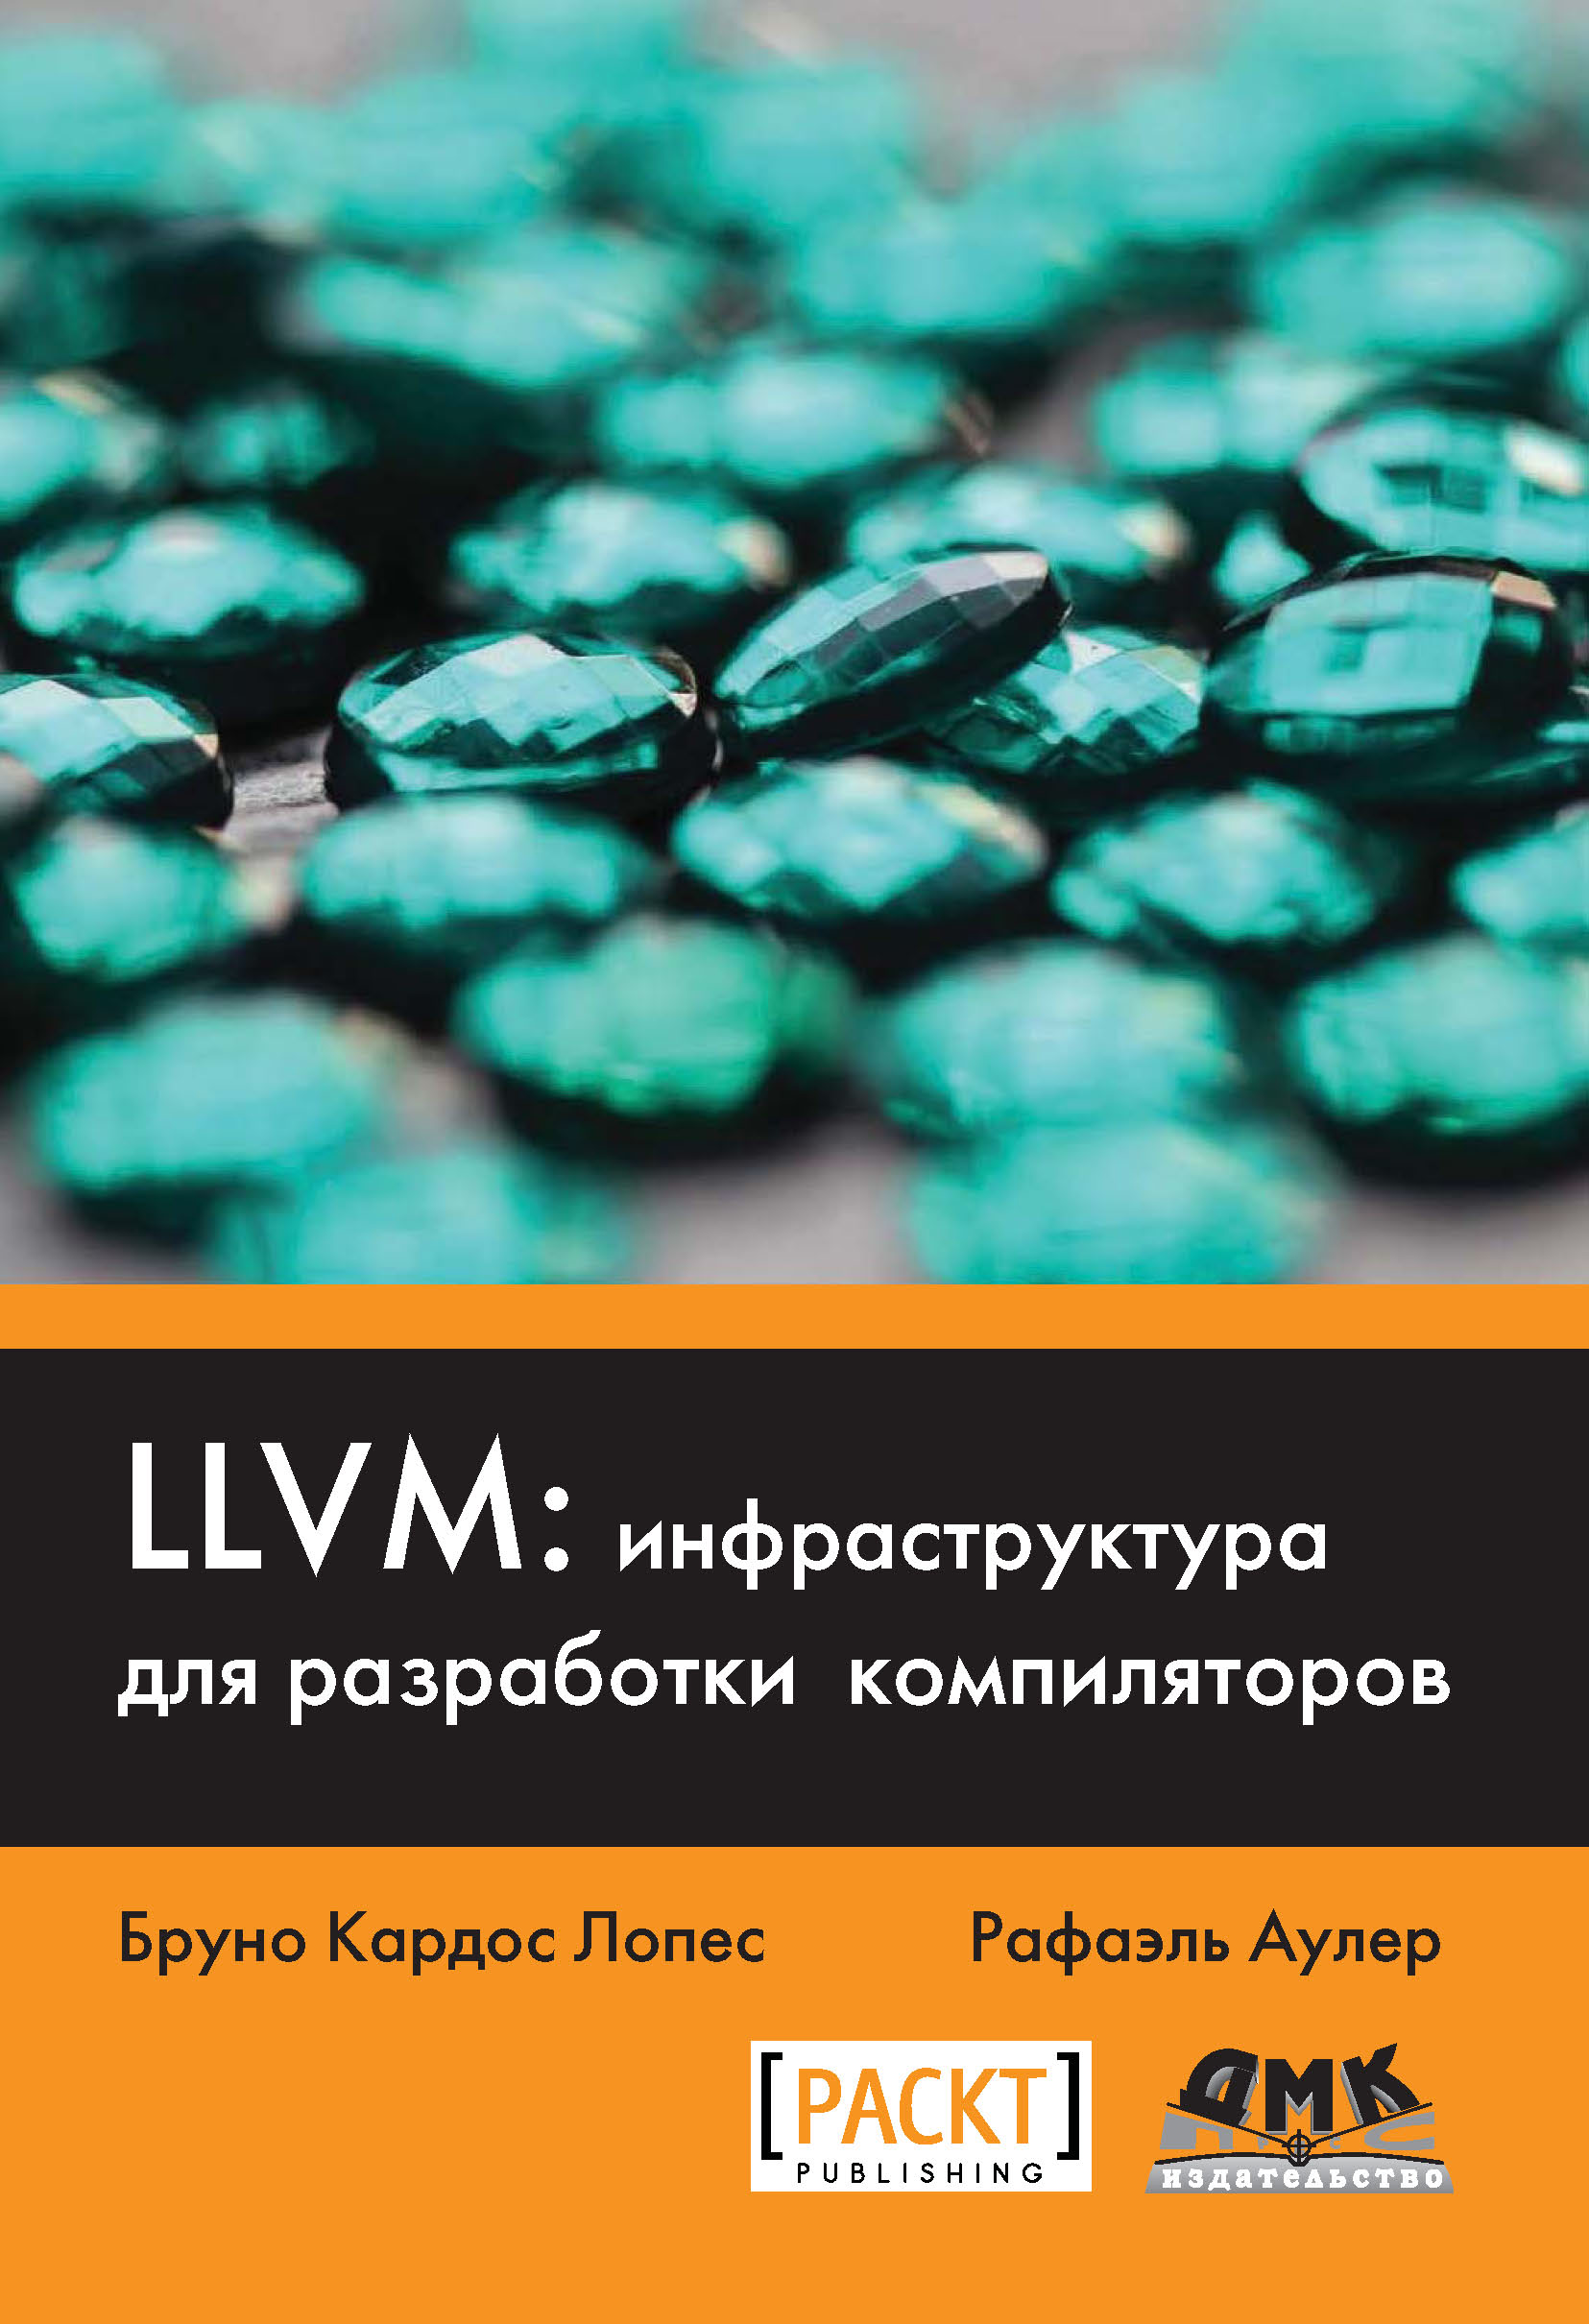 LLVM:инфраструктура для разработки компиляторов